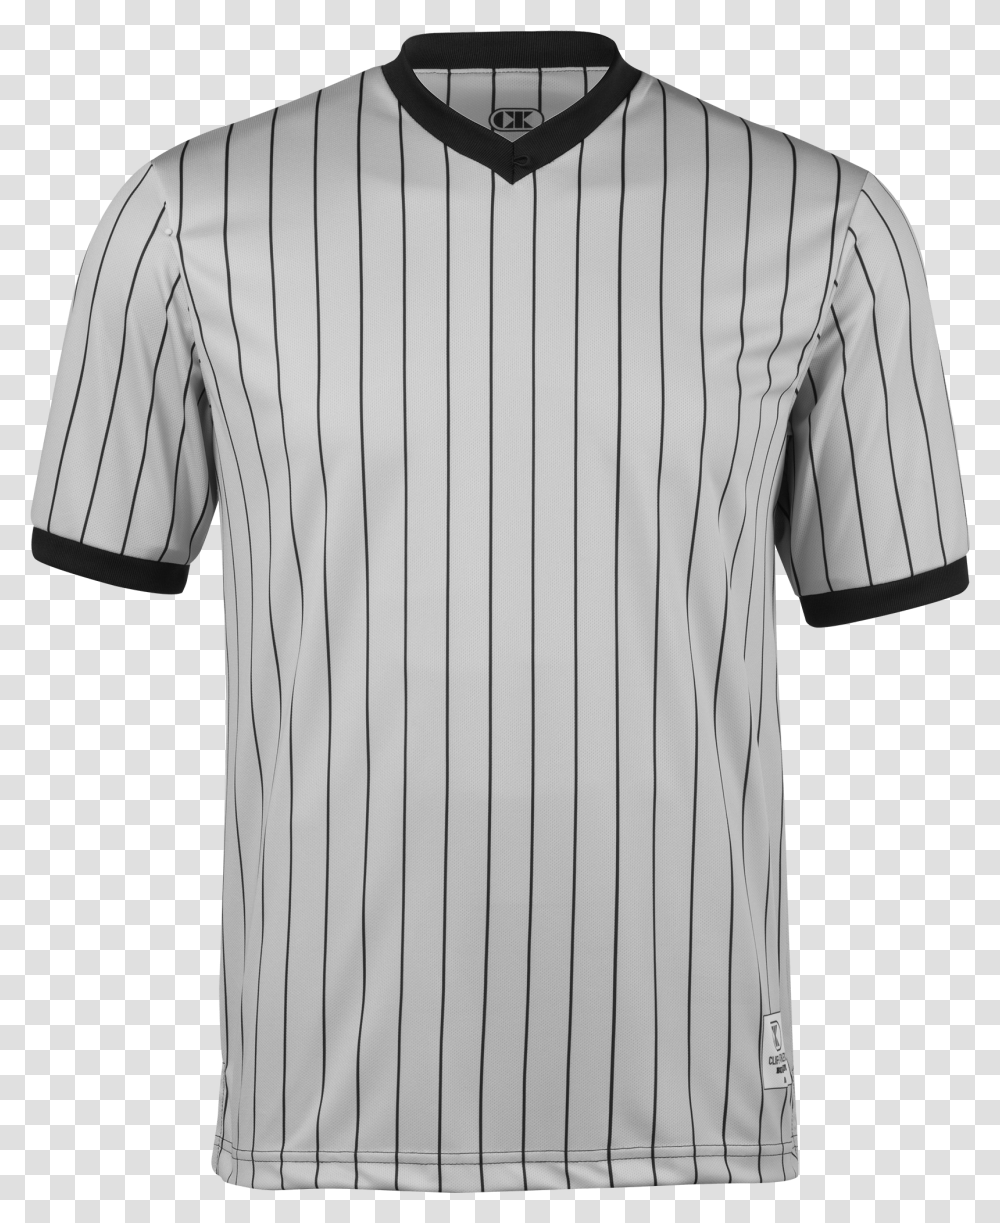 Cliff Keen Gray Officials V Neck Shirt Grey Black Main Shirt, Apparel, Jersey, Dress Shirt Transparent Png